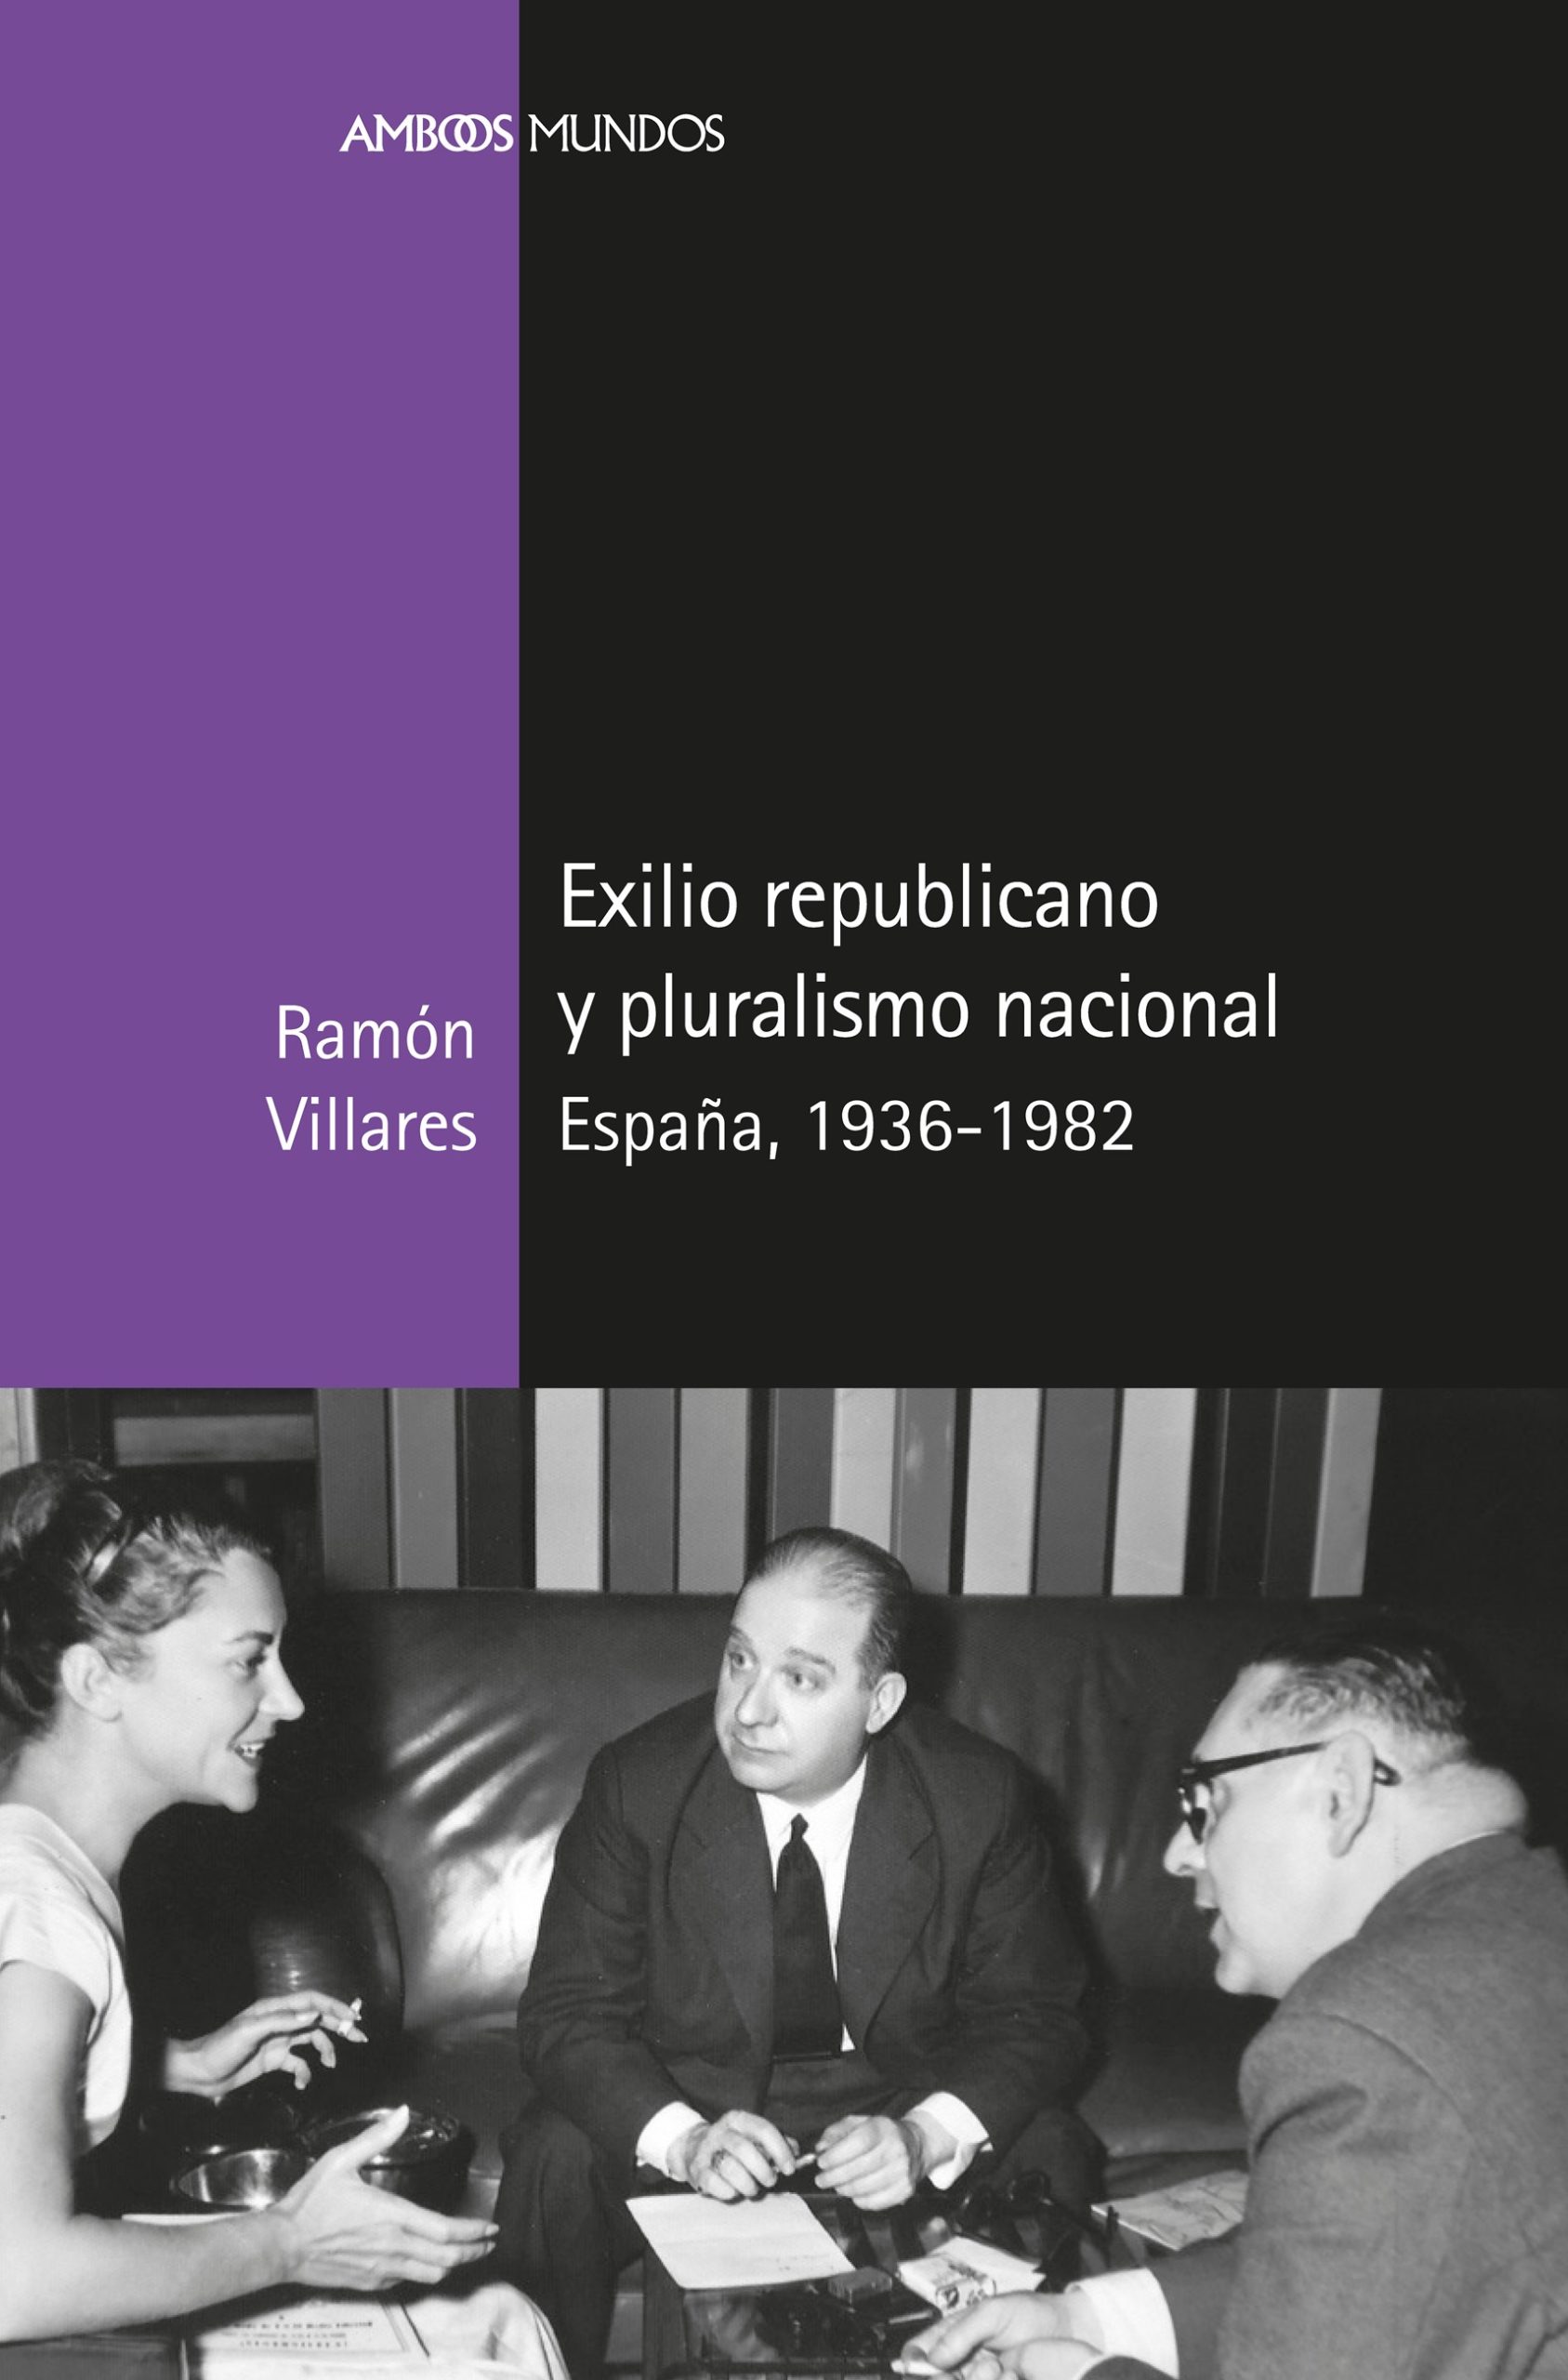 Presentación del libro ‘Exilio republicano y pluralismo nacional’ de Ramón Villares, próximo 3 de febrero en el Ateneo de Madrid